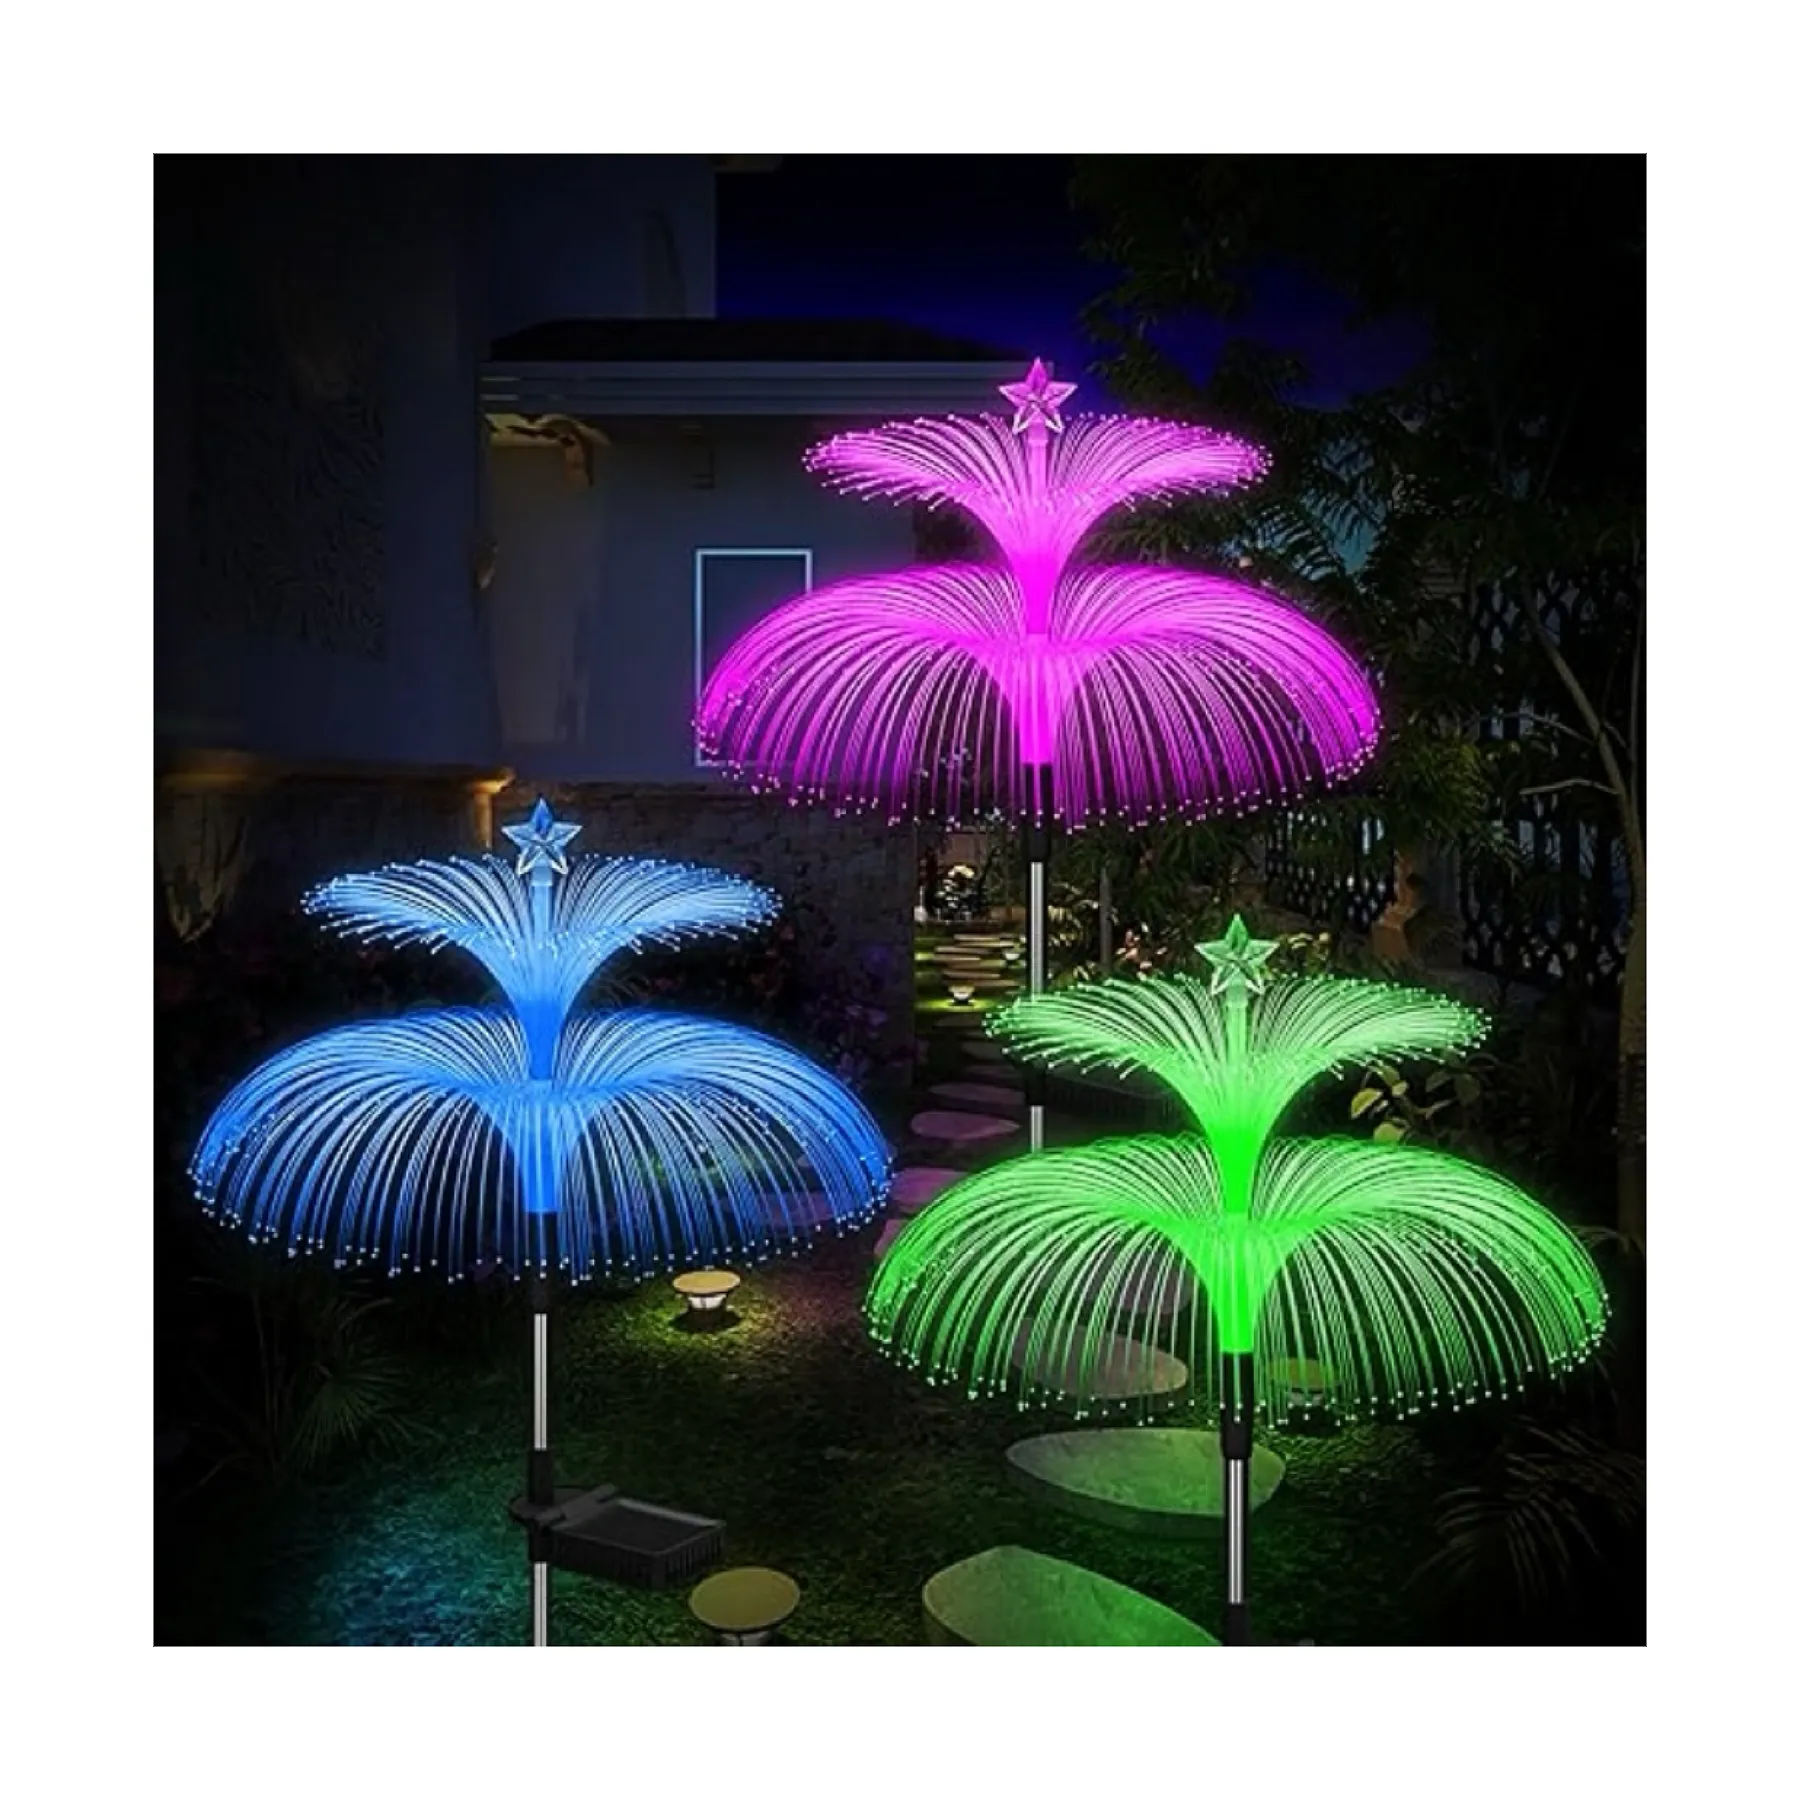 Su geçirmez güneş dış mekan ışıkları dekoratif 7 renk değiştirme çift denizanası işıklar ve kelebek bahçe Yard sanat için hediyeler